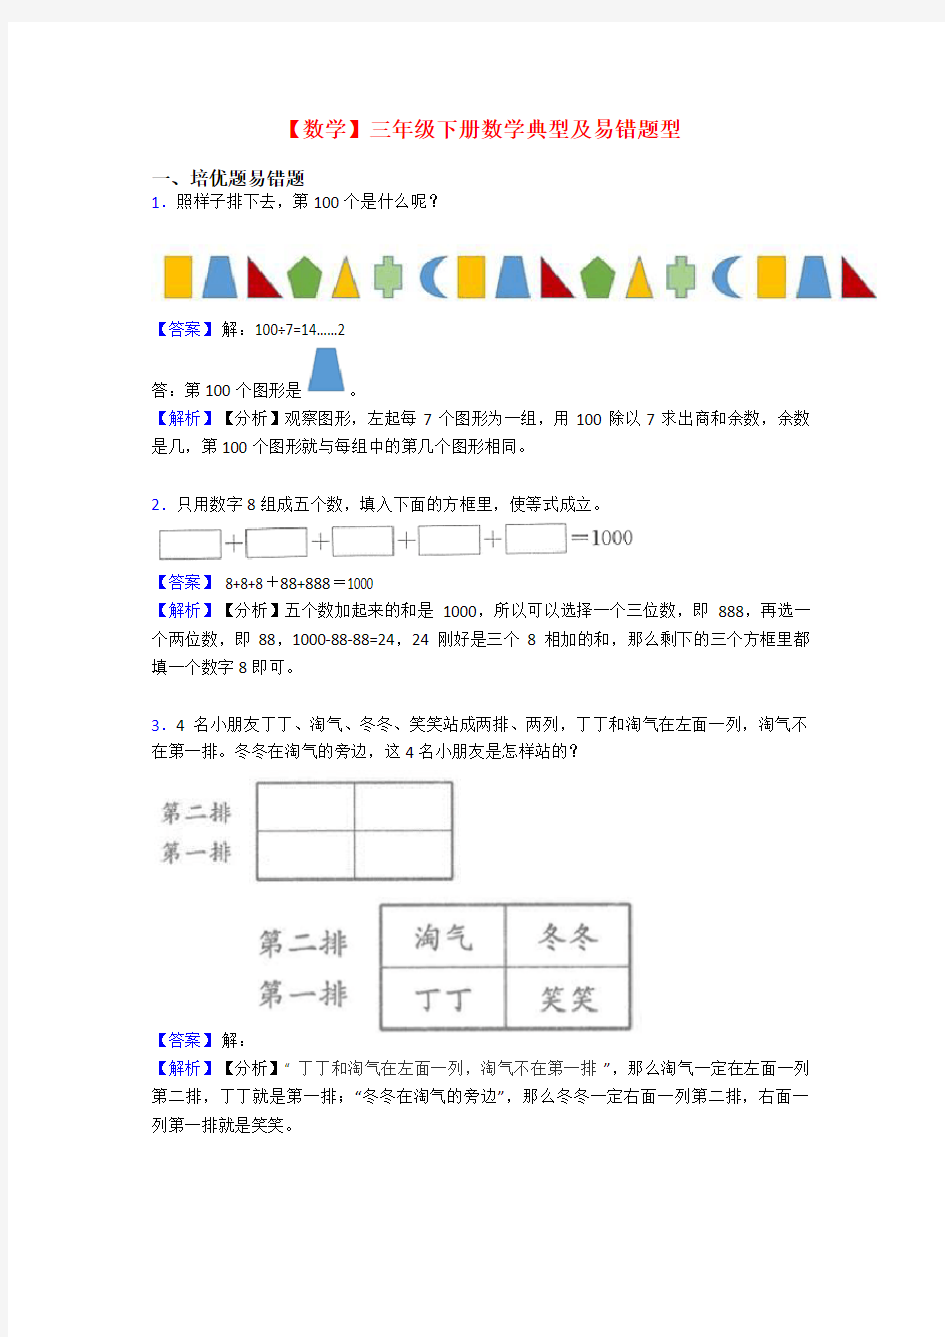 【数学】三年级下册数学典型及易错题型